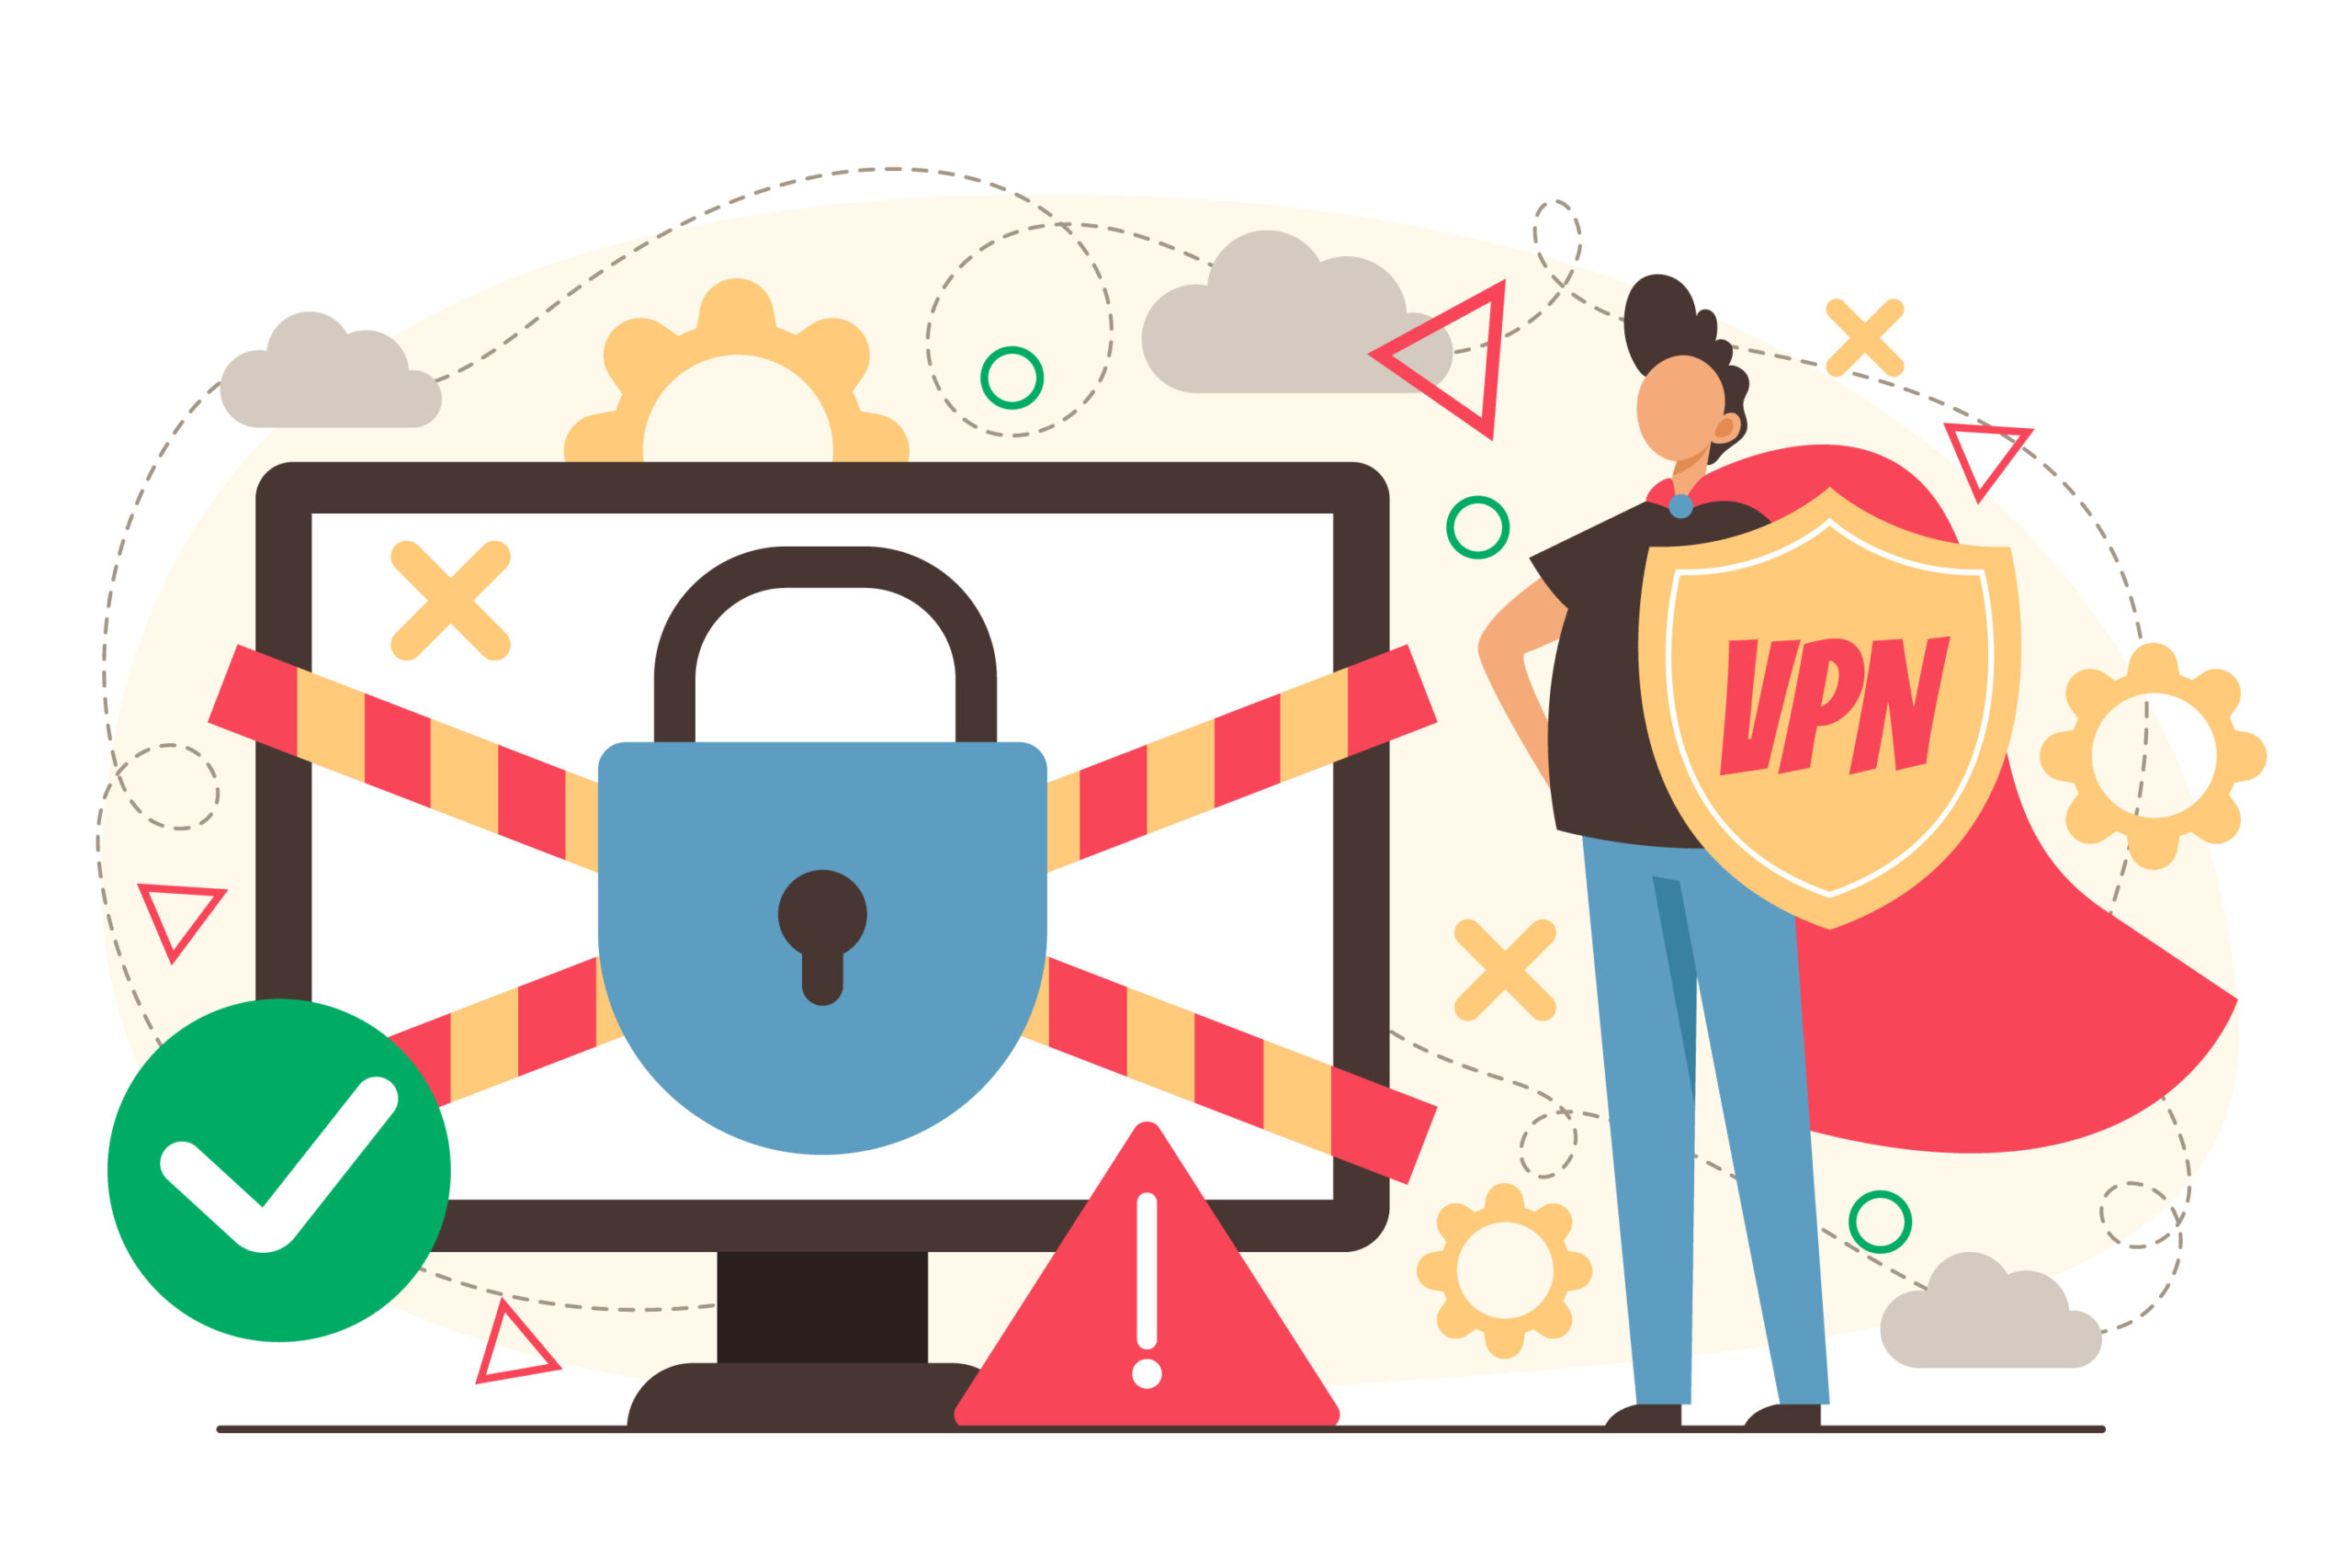 پروتکل های VPN